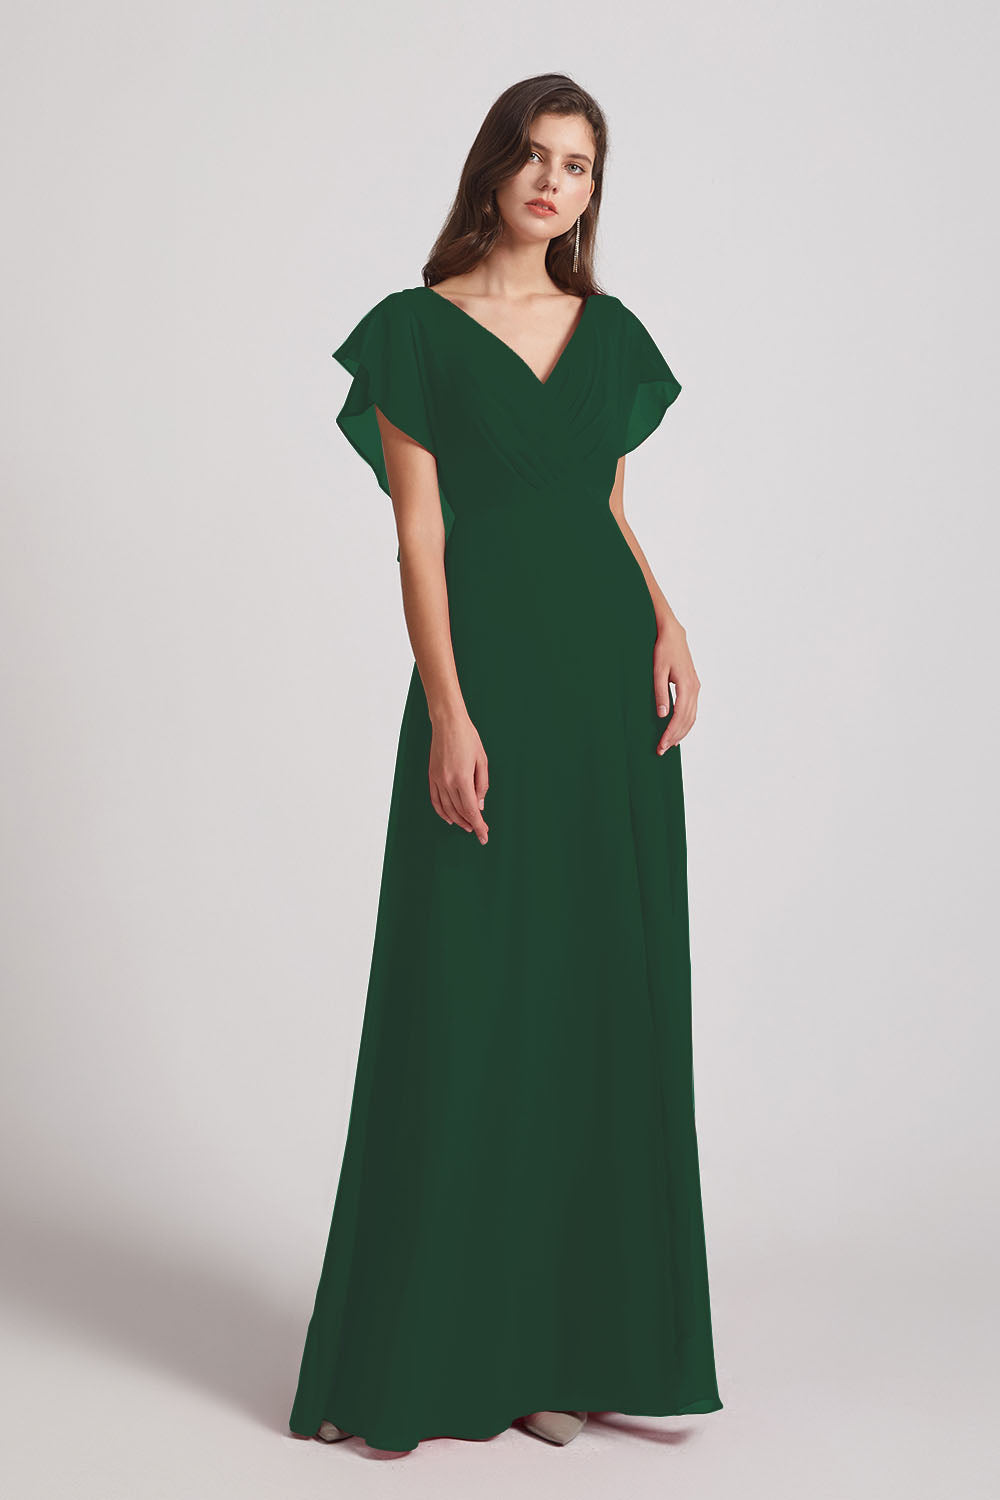 Alfa Bridal Dark Green V-Neck Chiffon Long Backless Bridesmaid Dresses with Side Slit (AF0071)